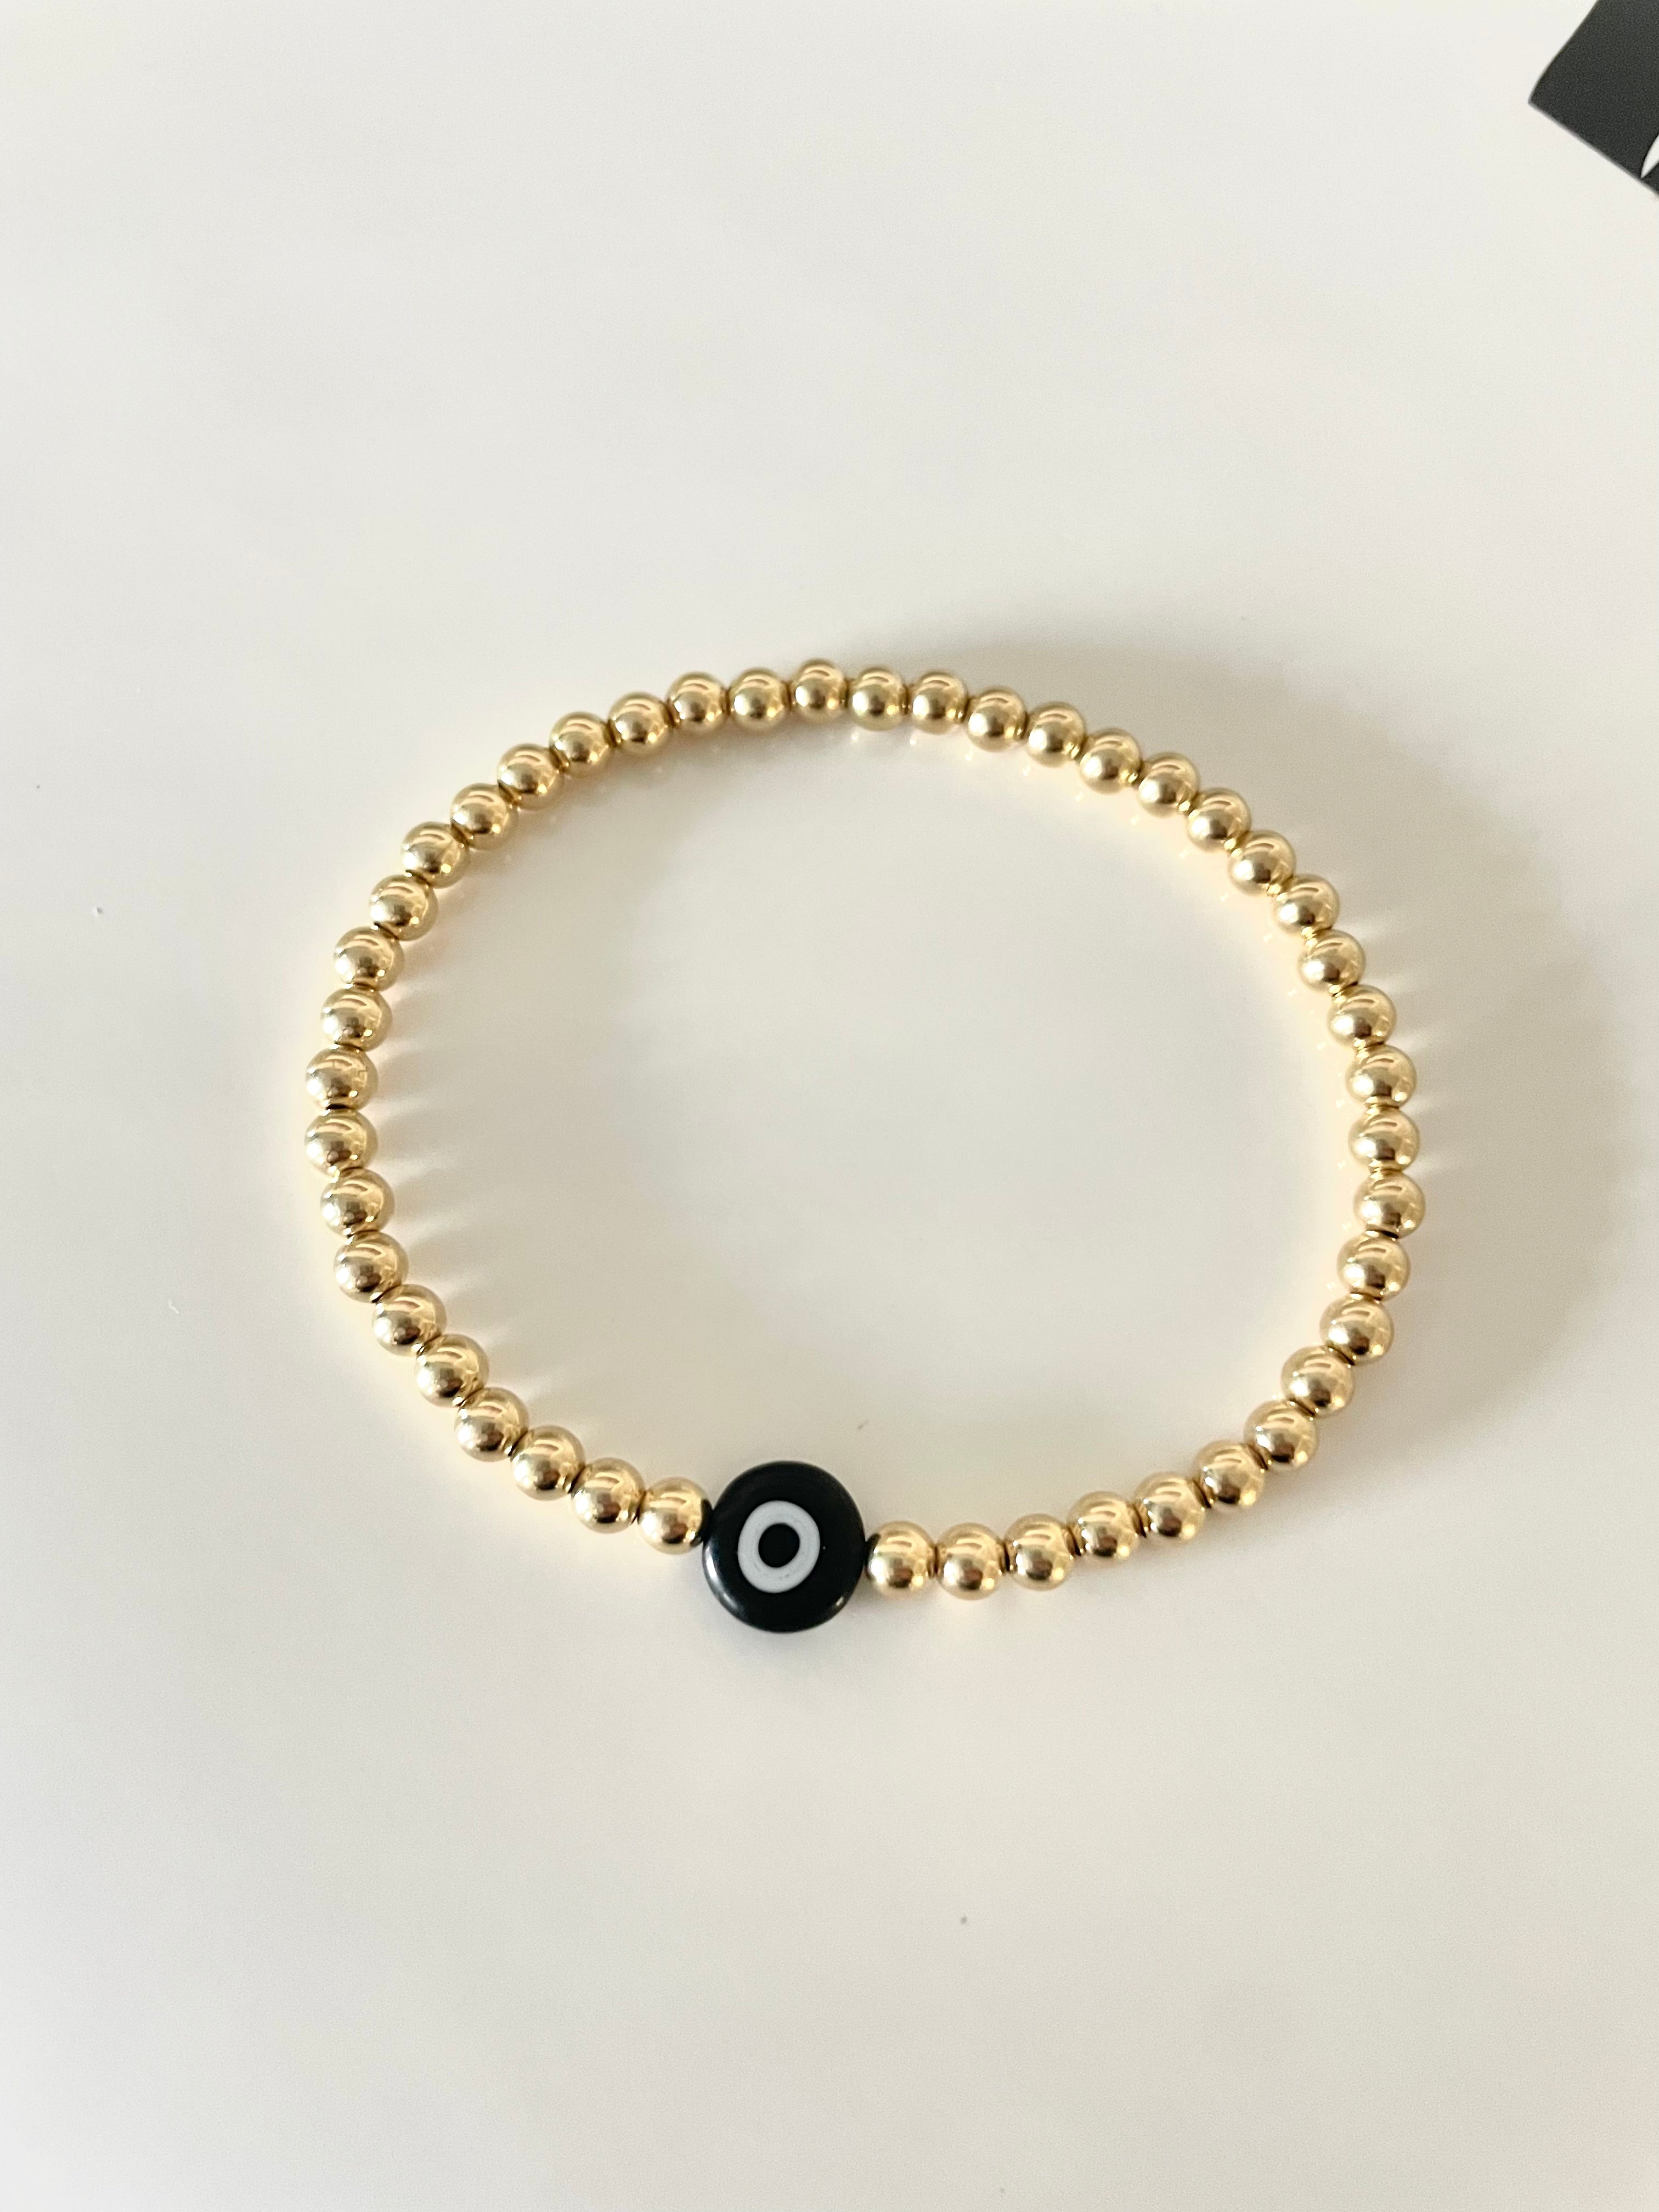 14k Gold Filled Beaded Bracelet with Evil Eye